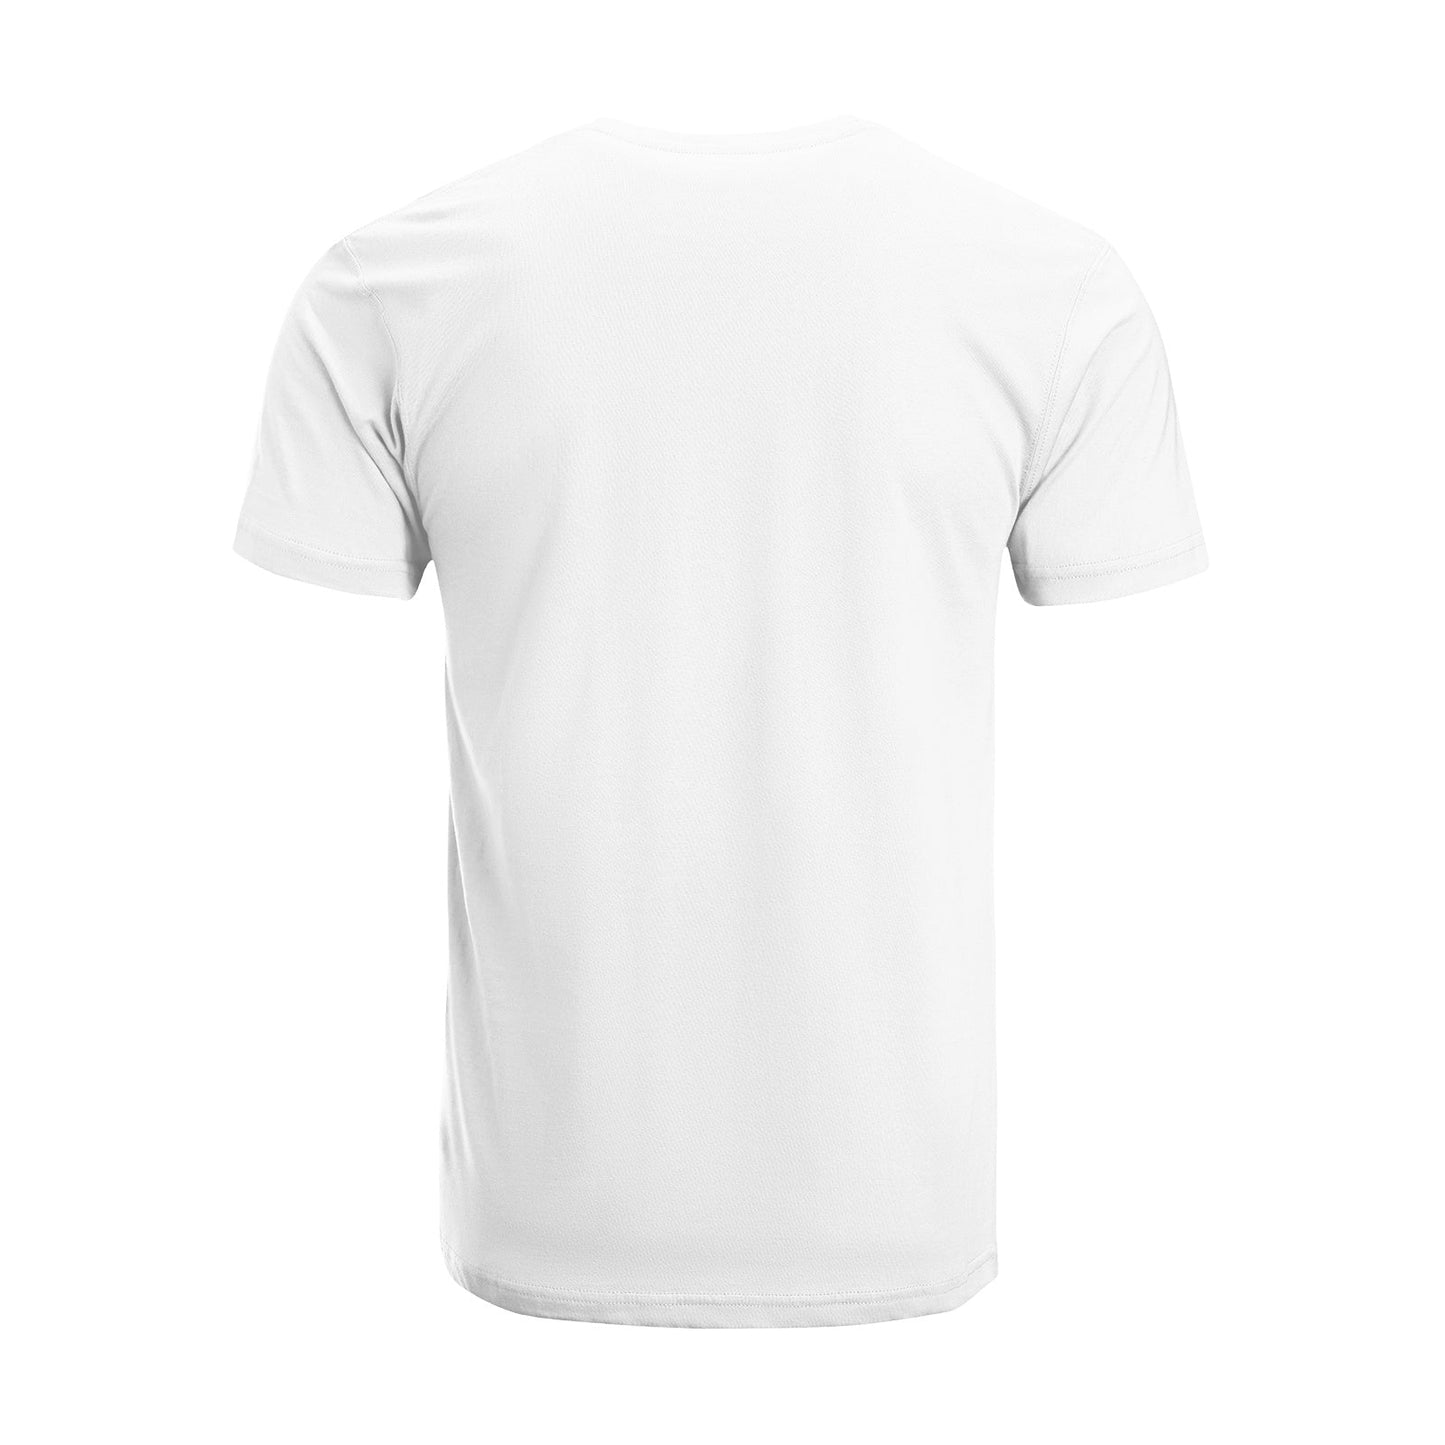 Unisex Short Sleeve Crew Neck Cotton Jersey T-Shirt TRUCK 36